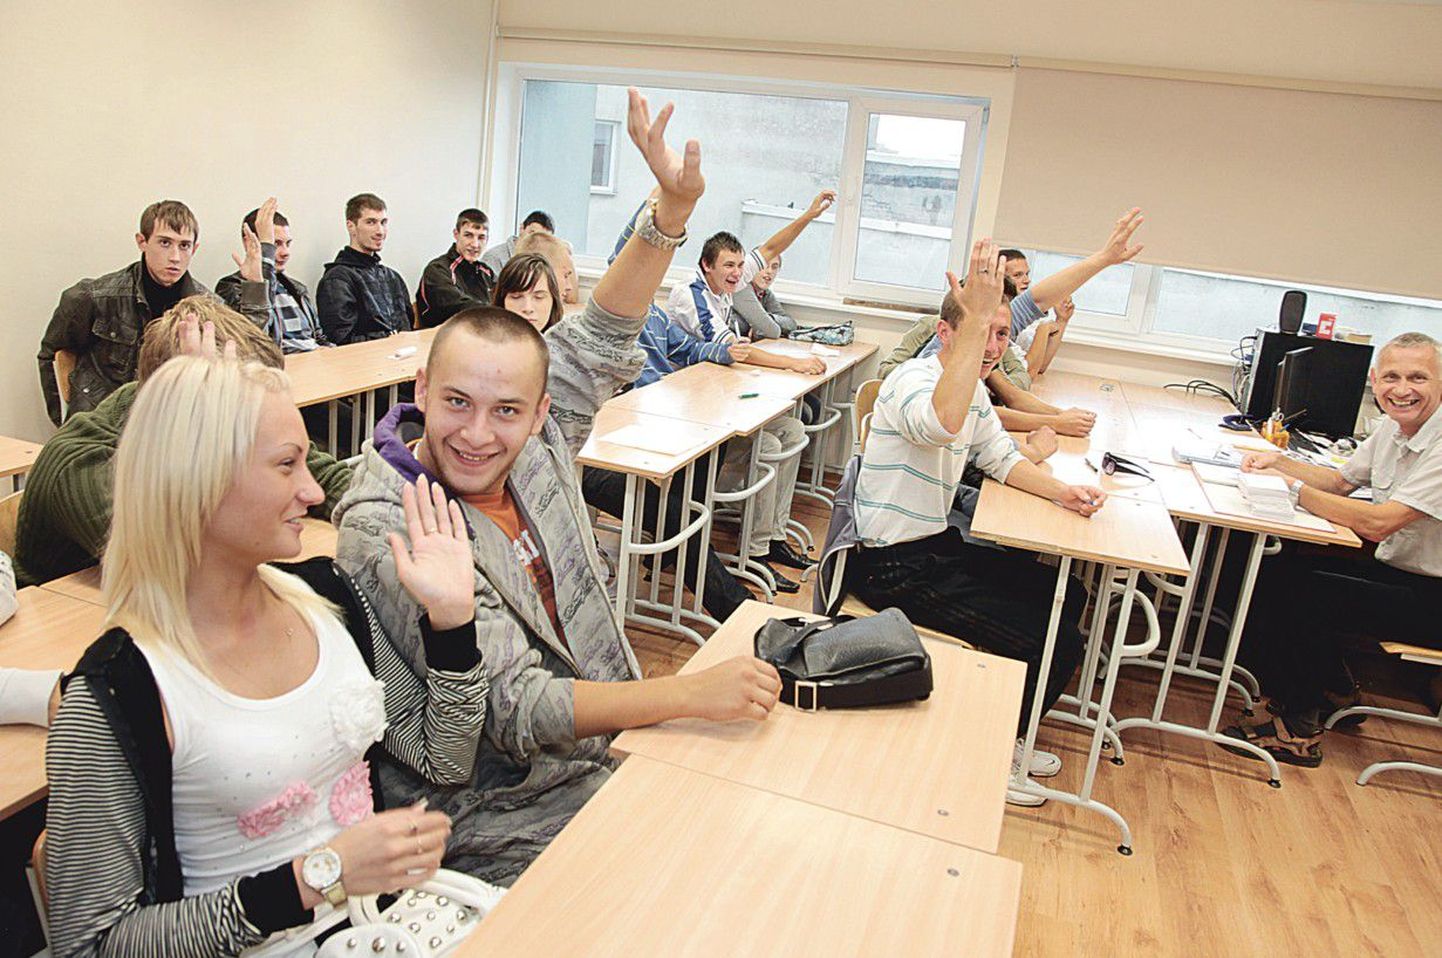 Tallinna Lasnamäe mehaanikakooli kinnisvarahoolduse viimase kursuse õpilaste kätemeri tõusis küsimuse peale, kui paljud neist kavatsevad pärast kooli lõpetamist välismaale tööle minna.